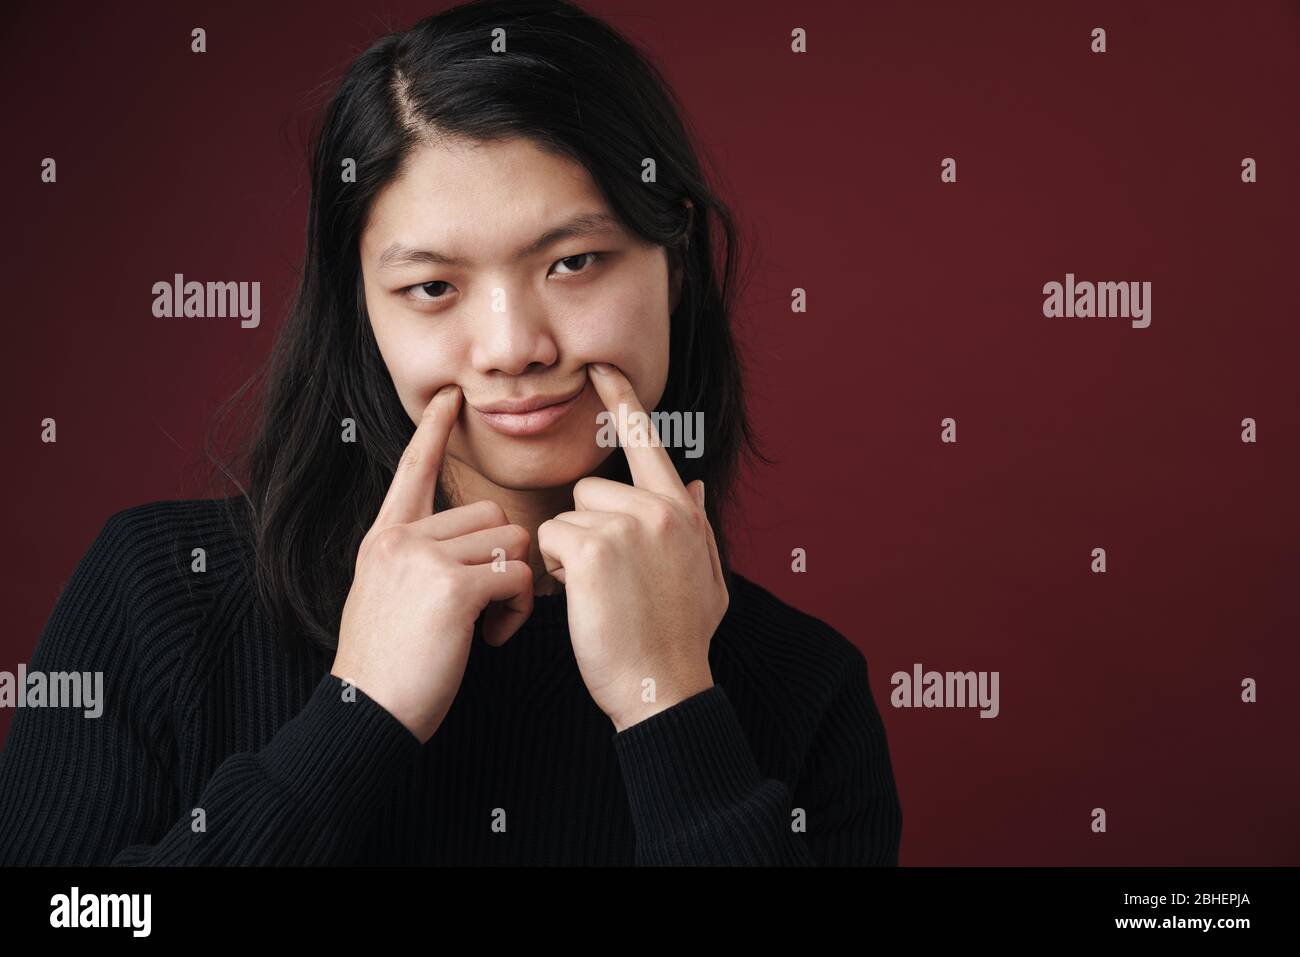 Immagine di un uomo asiatico triste che fa un sorriso falso con le dita isolate sullo sfondo borgogna Foto Stock